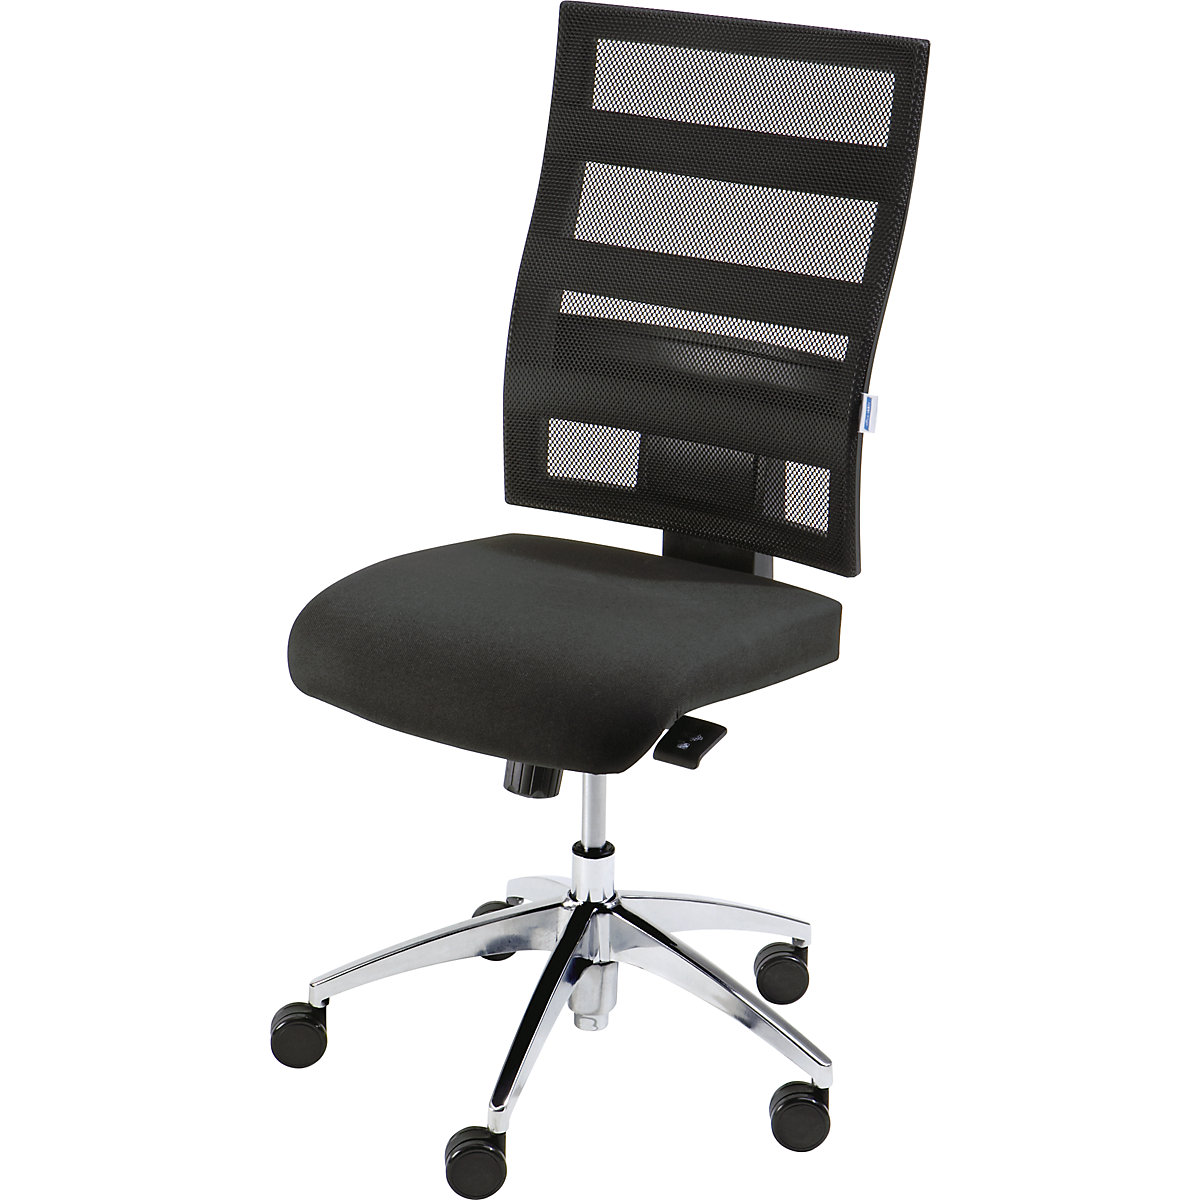 EUROKRAFTpro – Otočná židle pro operátory, výška opěradla 550 mm, mechanika s bodovou synchronizací, plochý sedák, černý sedák, černé síťované opěradlo